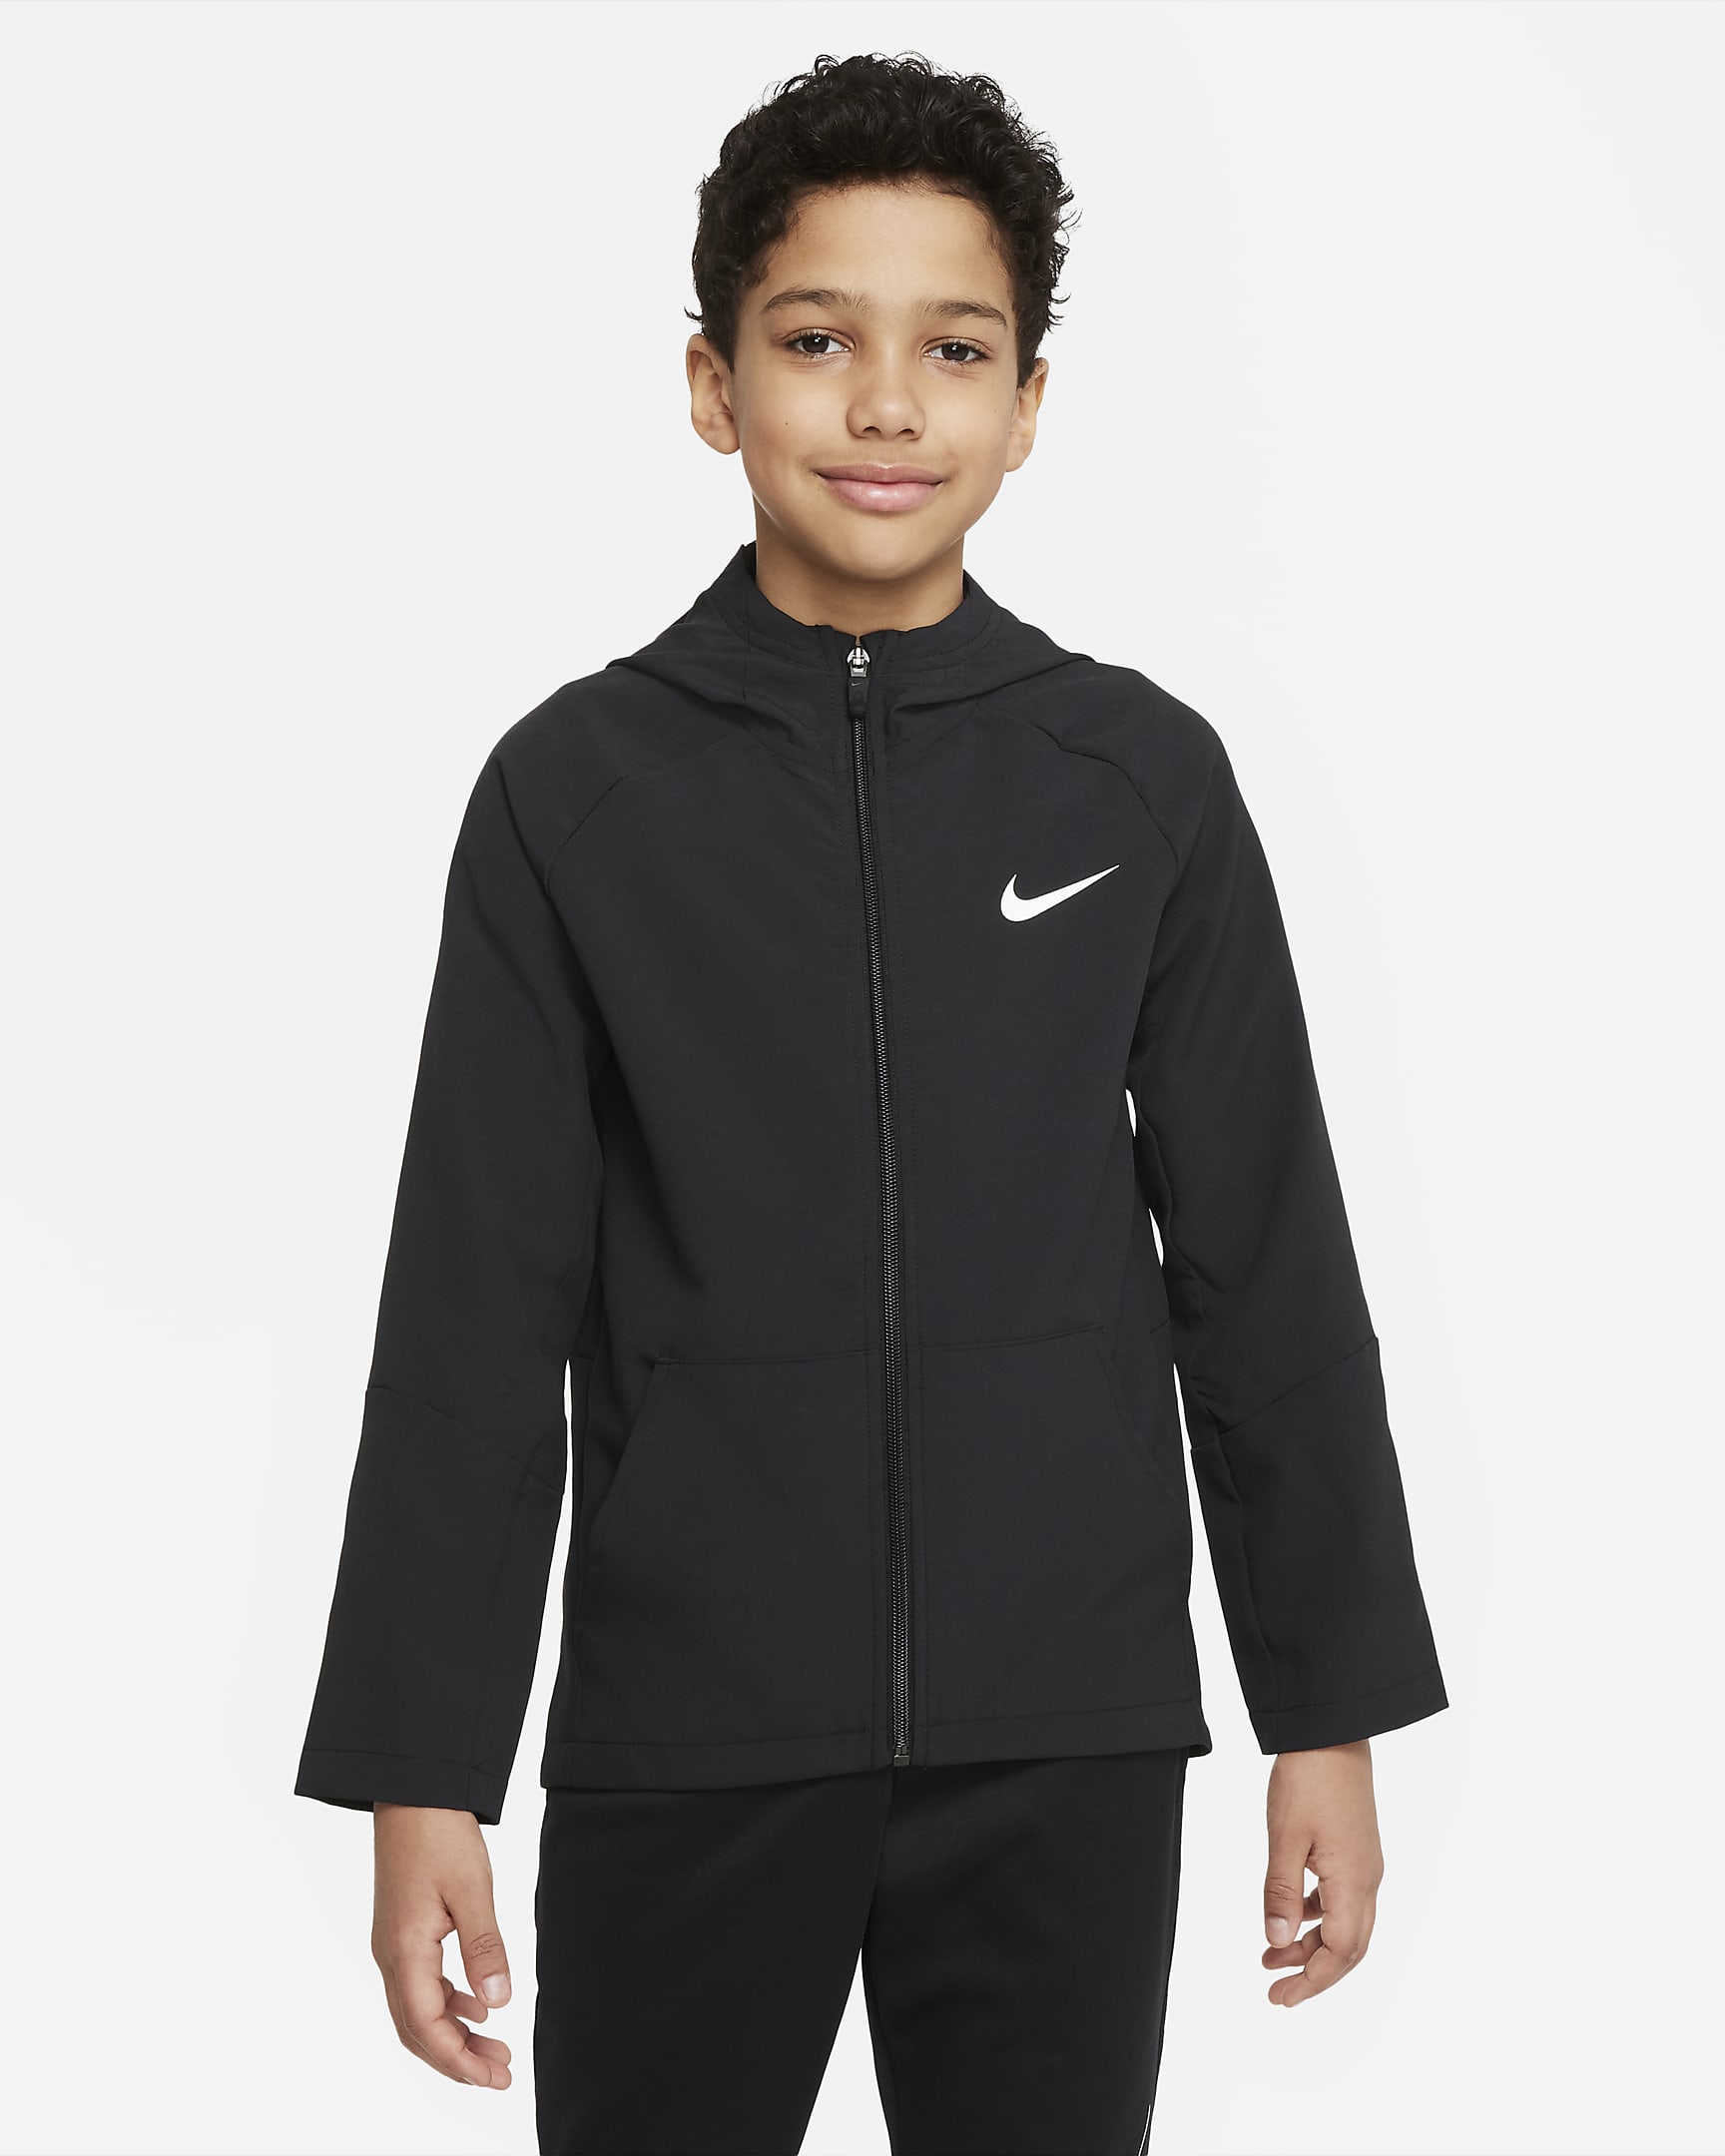 Nike Dri-FIT gewebte Trainingsjacke für ältere Kinder (Jungen) - Schwarz/Schwarz/Schwarz/Weiß